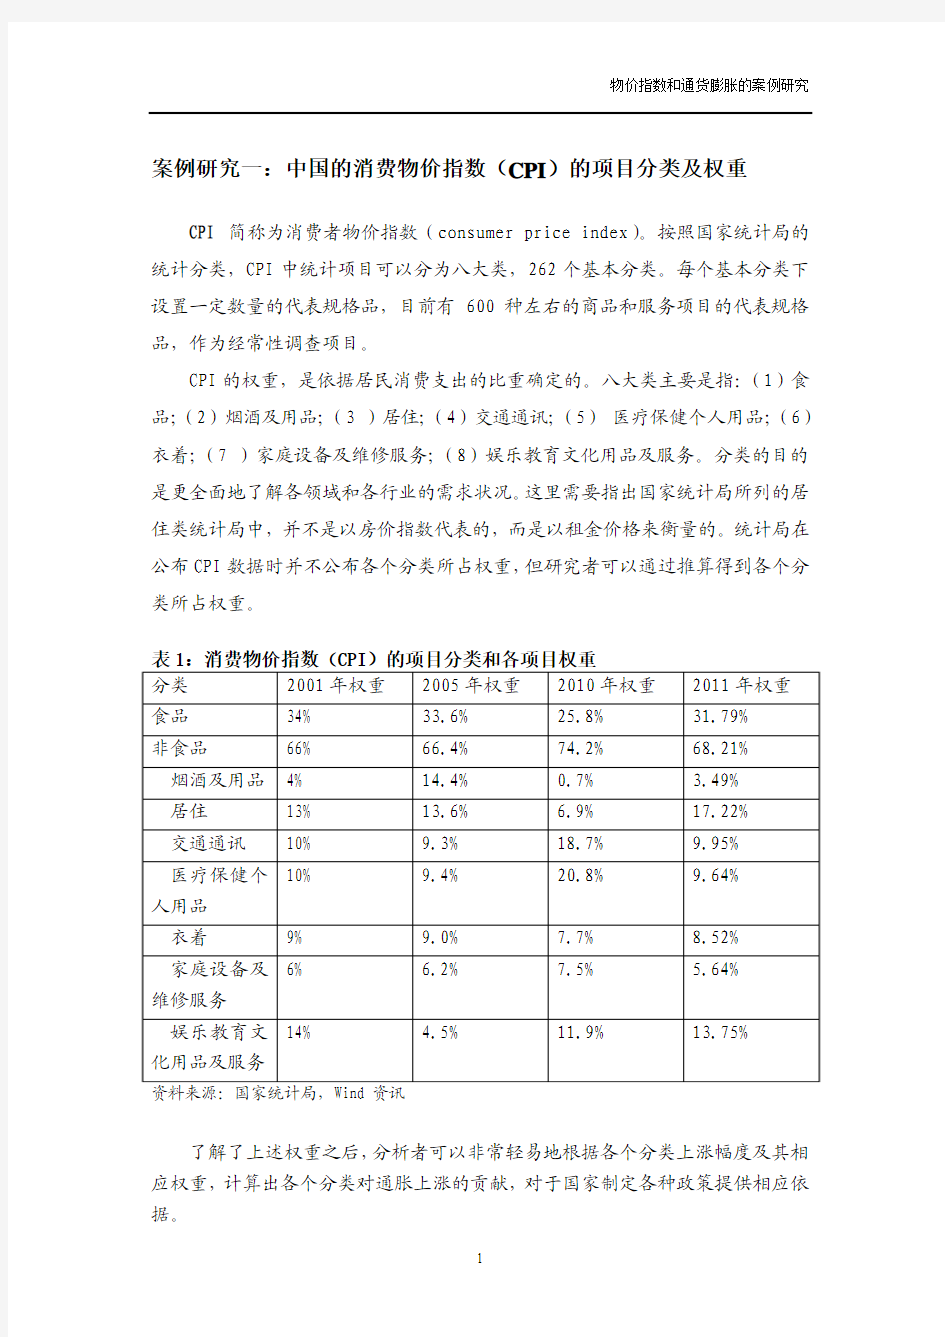 案例研究一中国的消费物价指数(CPI)的项目分类及权重